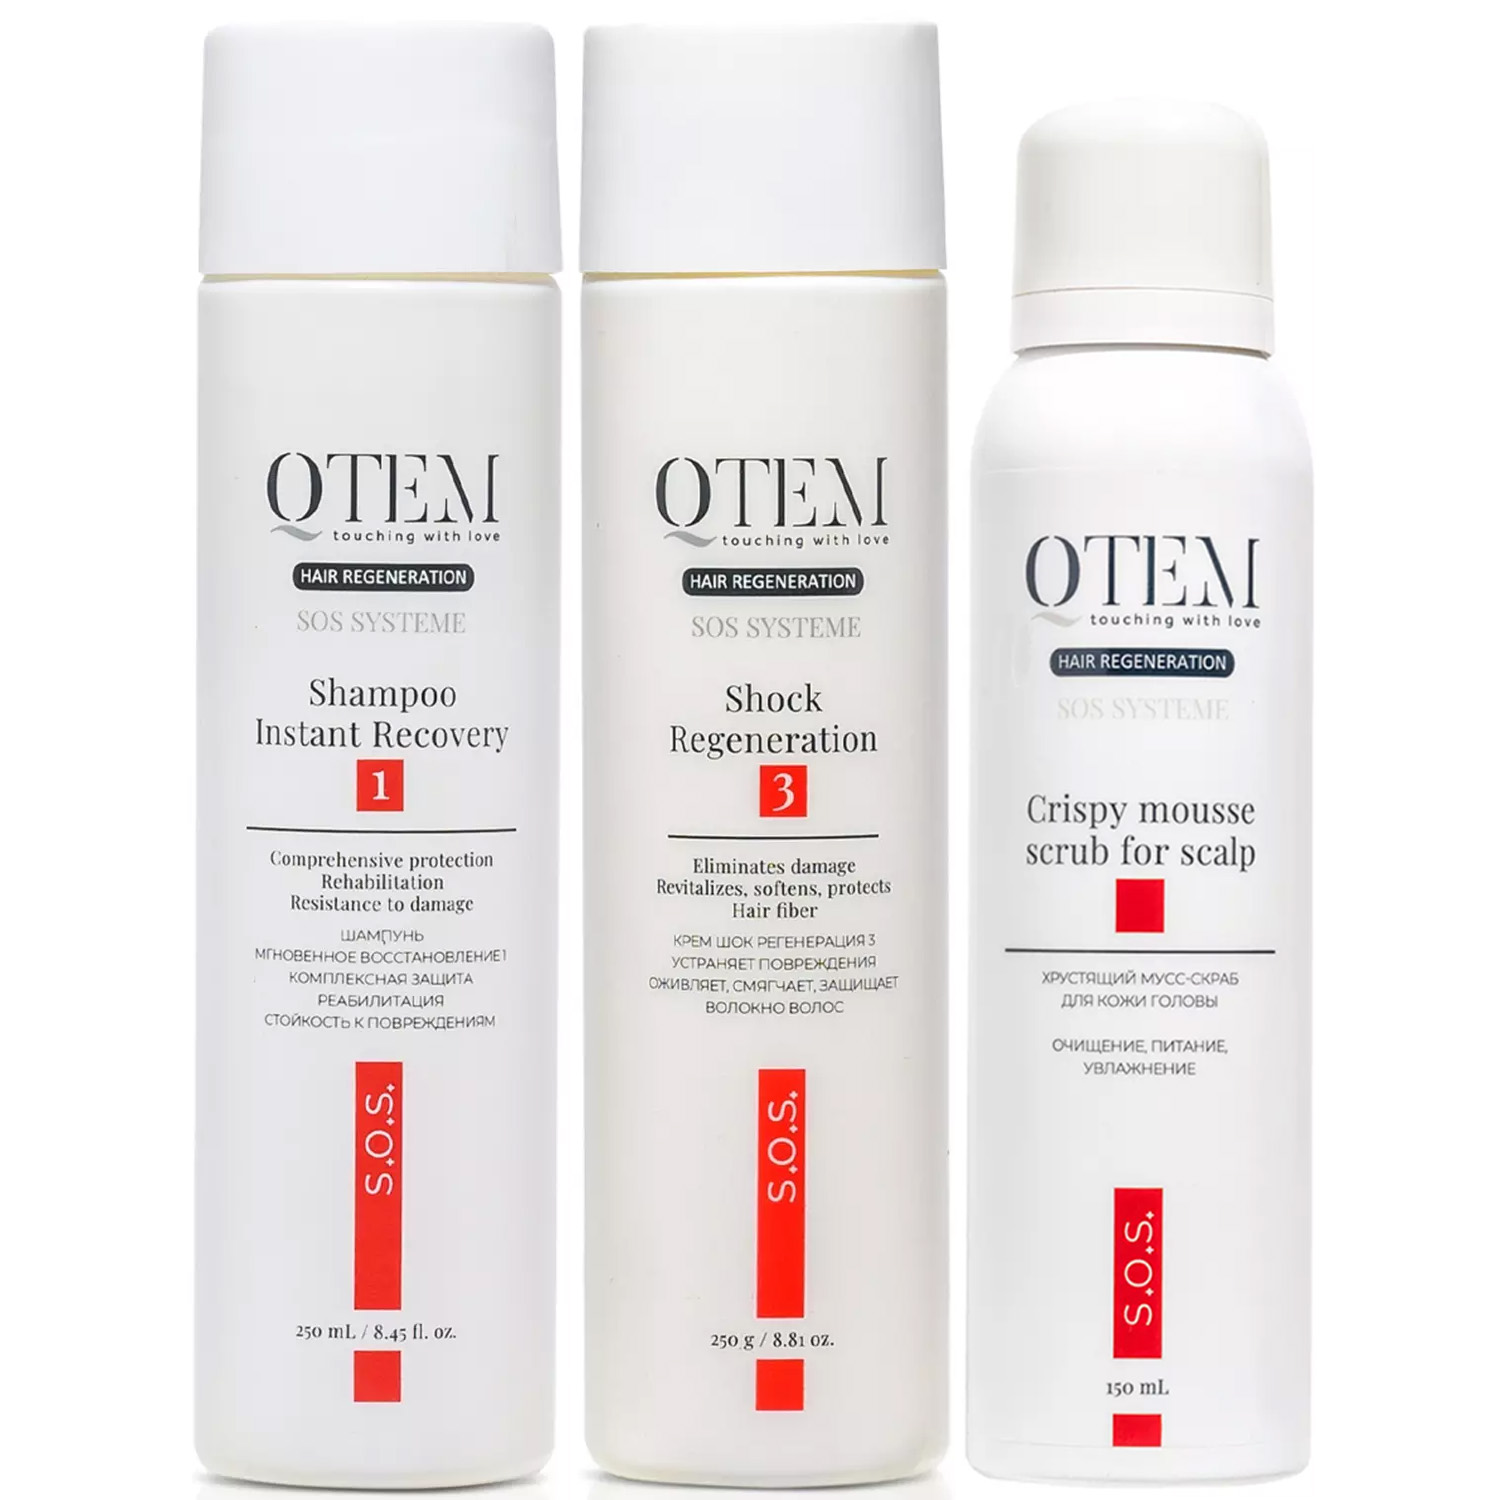 Qtem Набор для интенсивного восстановления волос: шампунь 250 мл + крем-маска 250 г + скраб 150 мл (Qtem, Hair Regeneration)